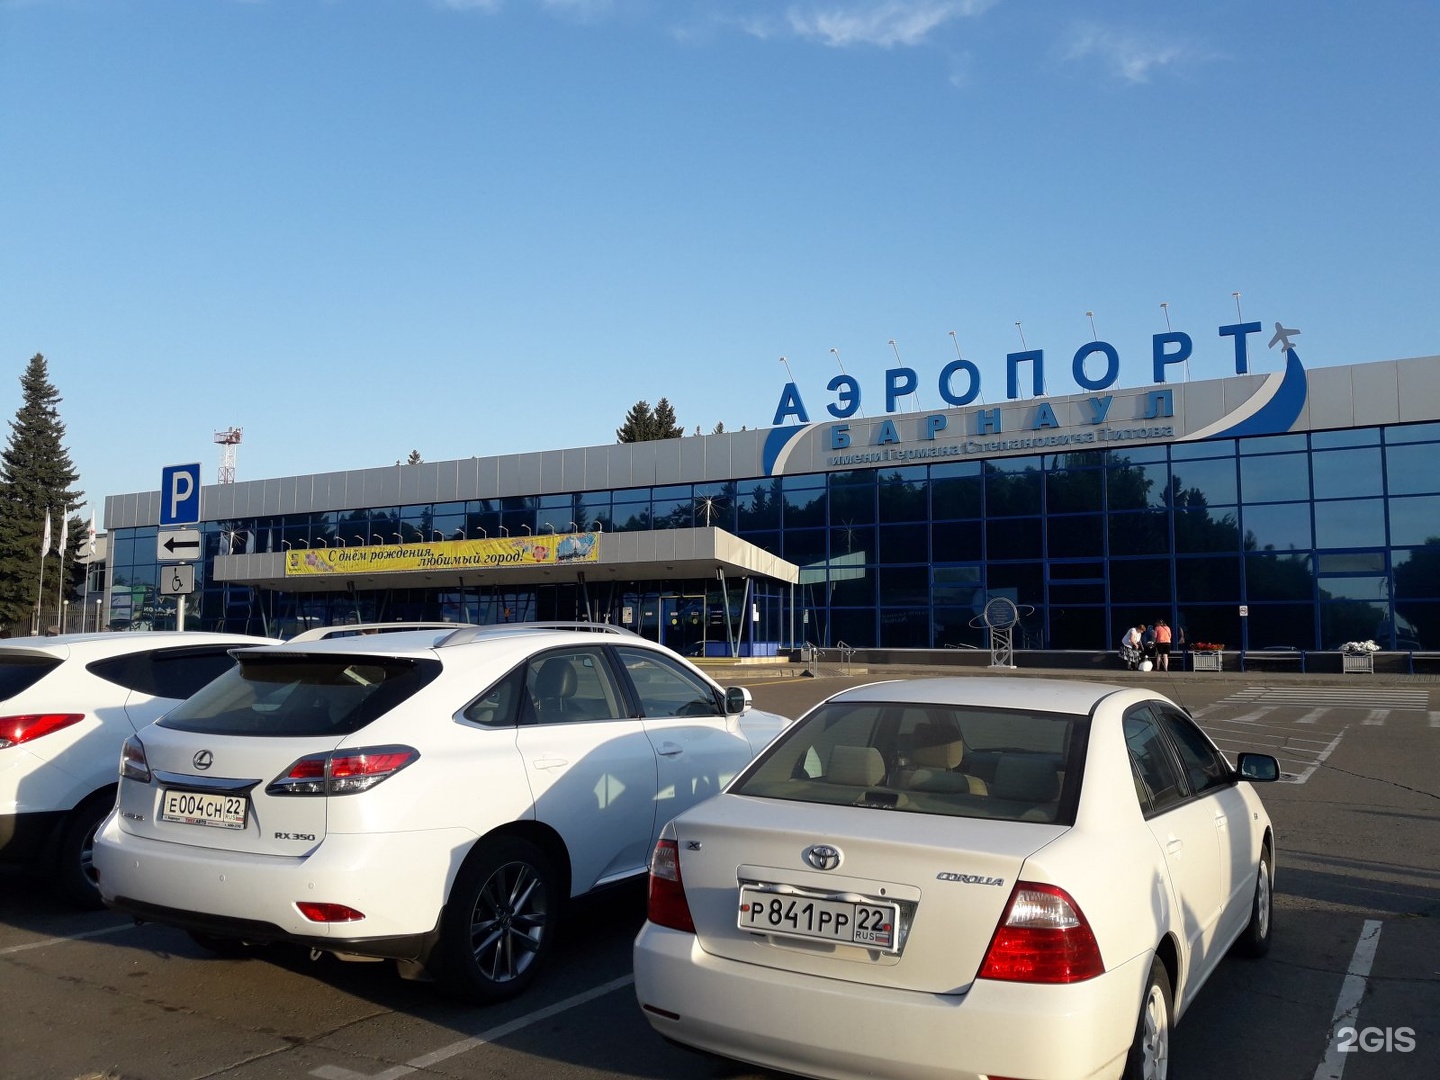 Аэропорт барнаул вылеты сегодня. Аэропорт Барнаул. Аэропорт Барнаул фото. Аэропорт в Барнауле название. Схема барнаульского аэропорта.